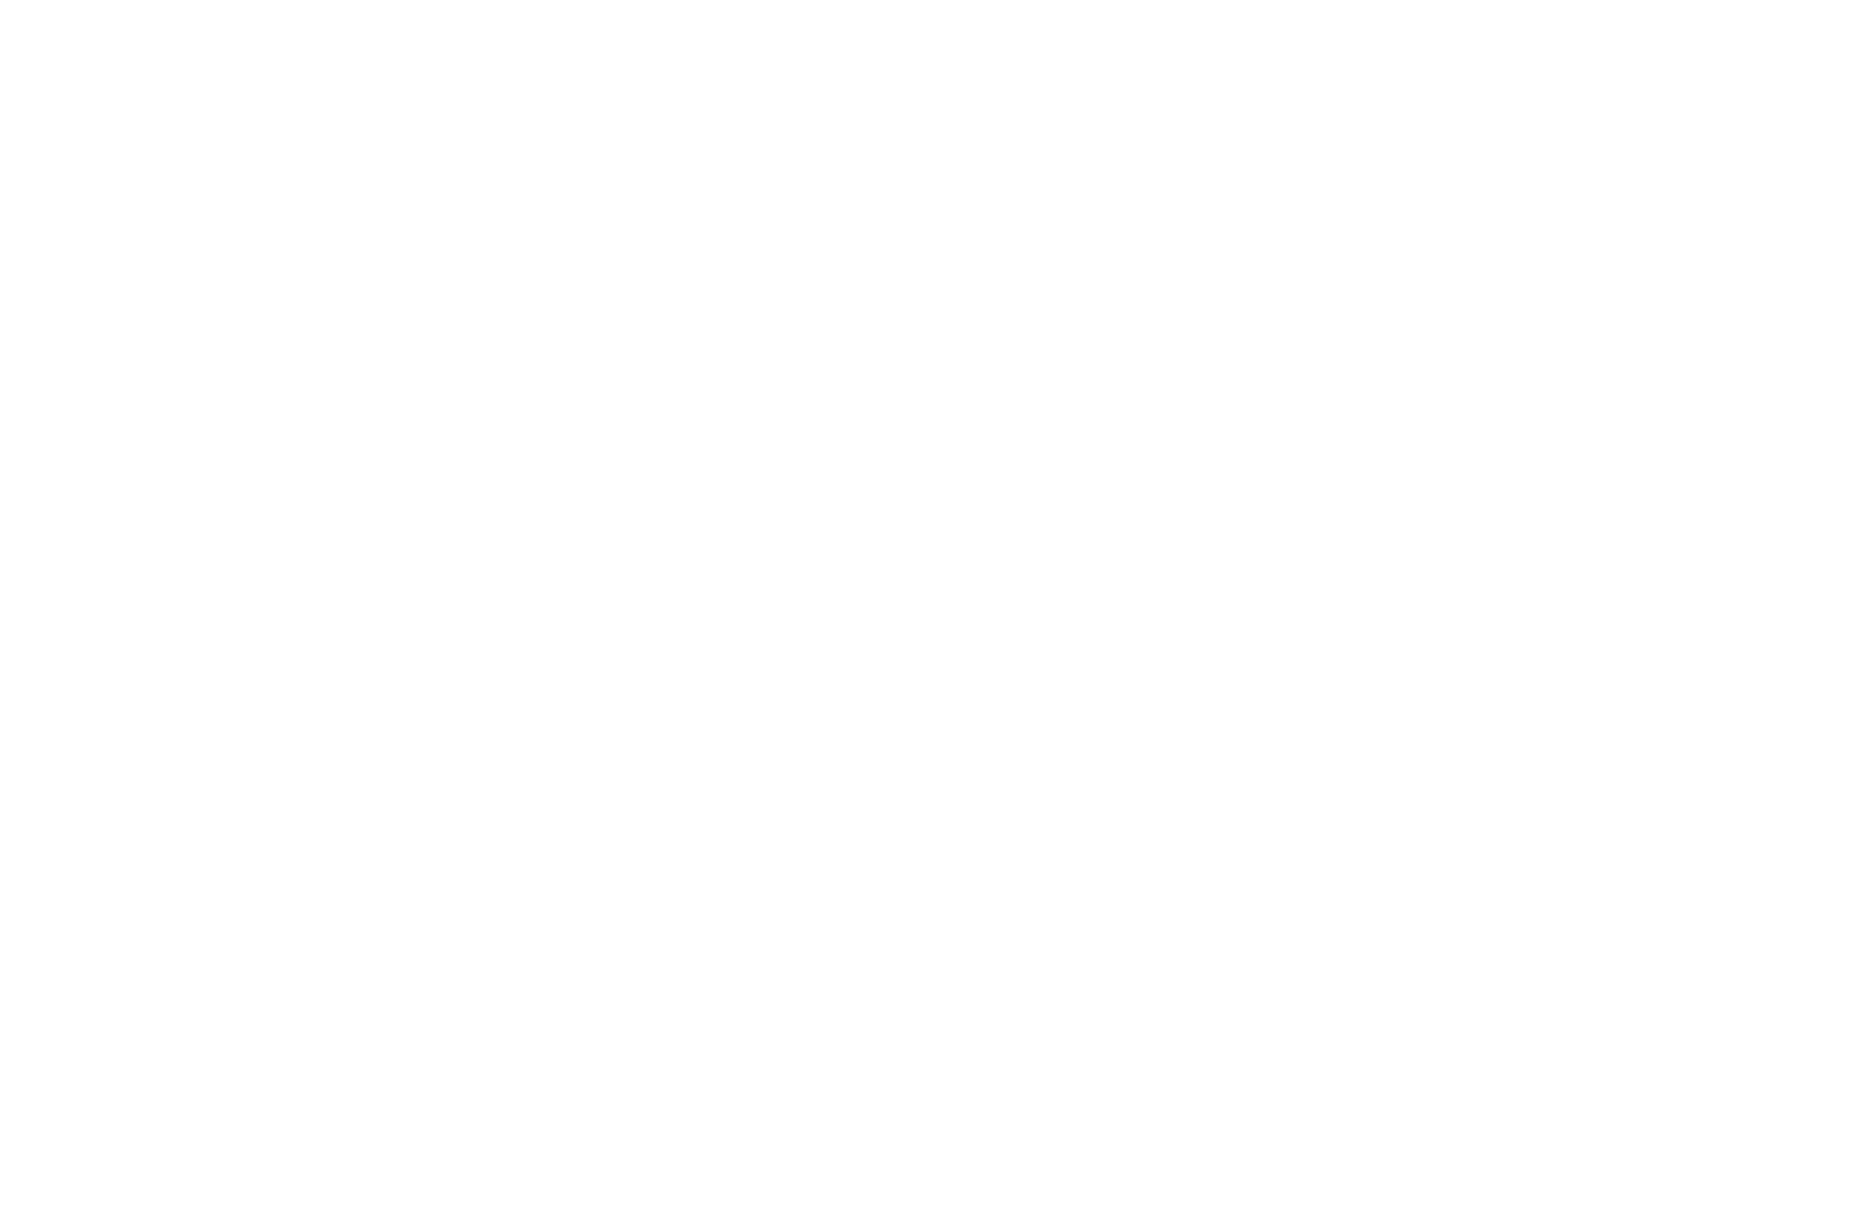 Berliner Kebab